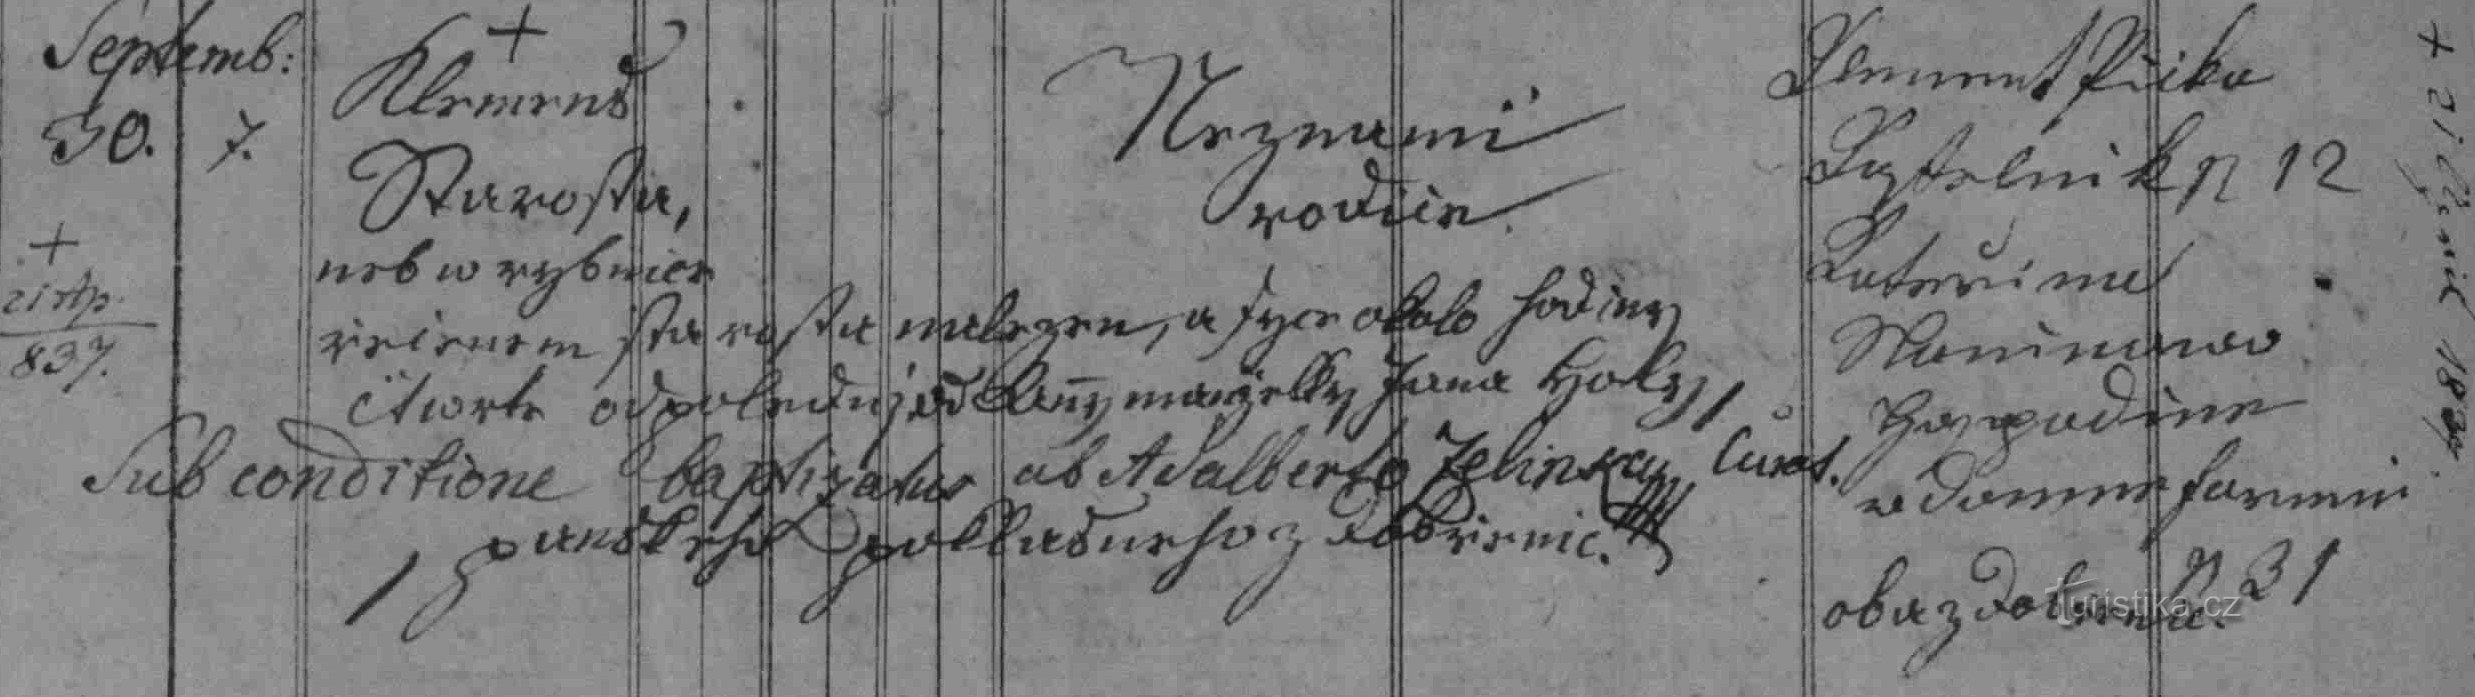 Dobřenice register över dopet av Klemens Starosta från 1836